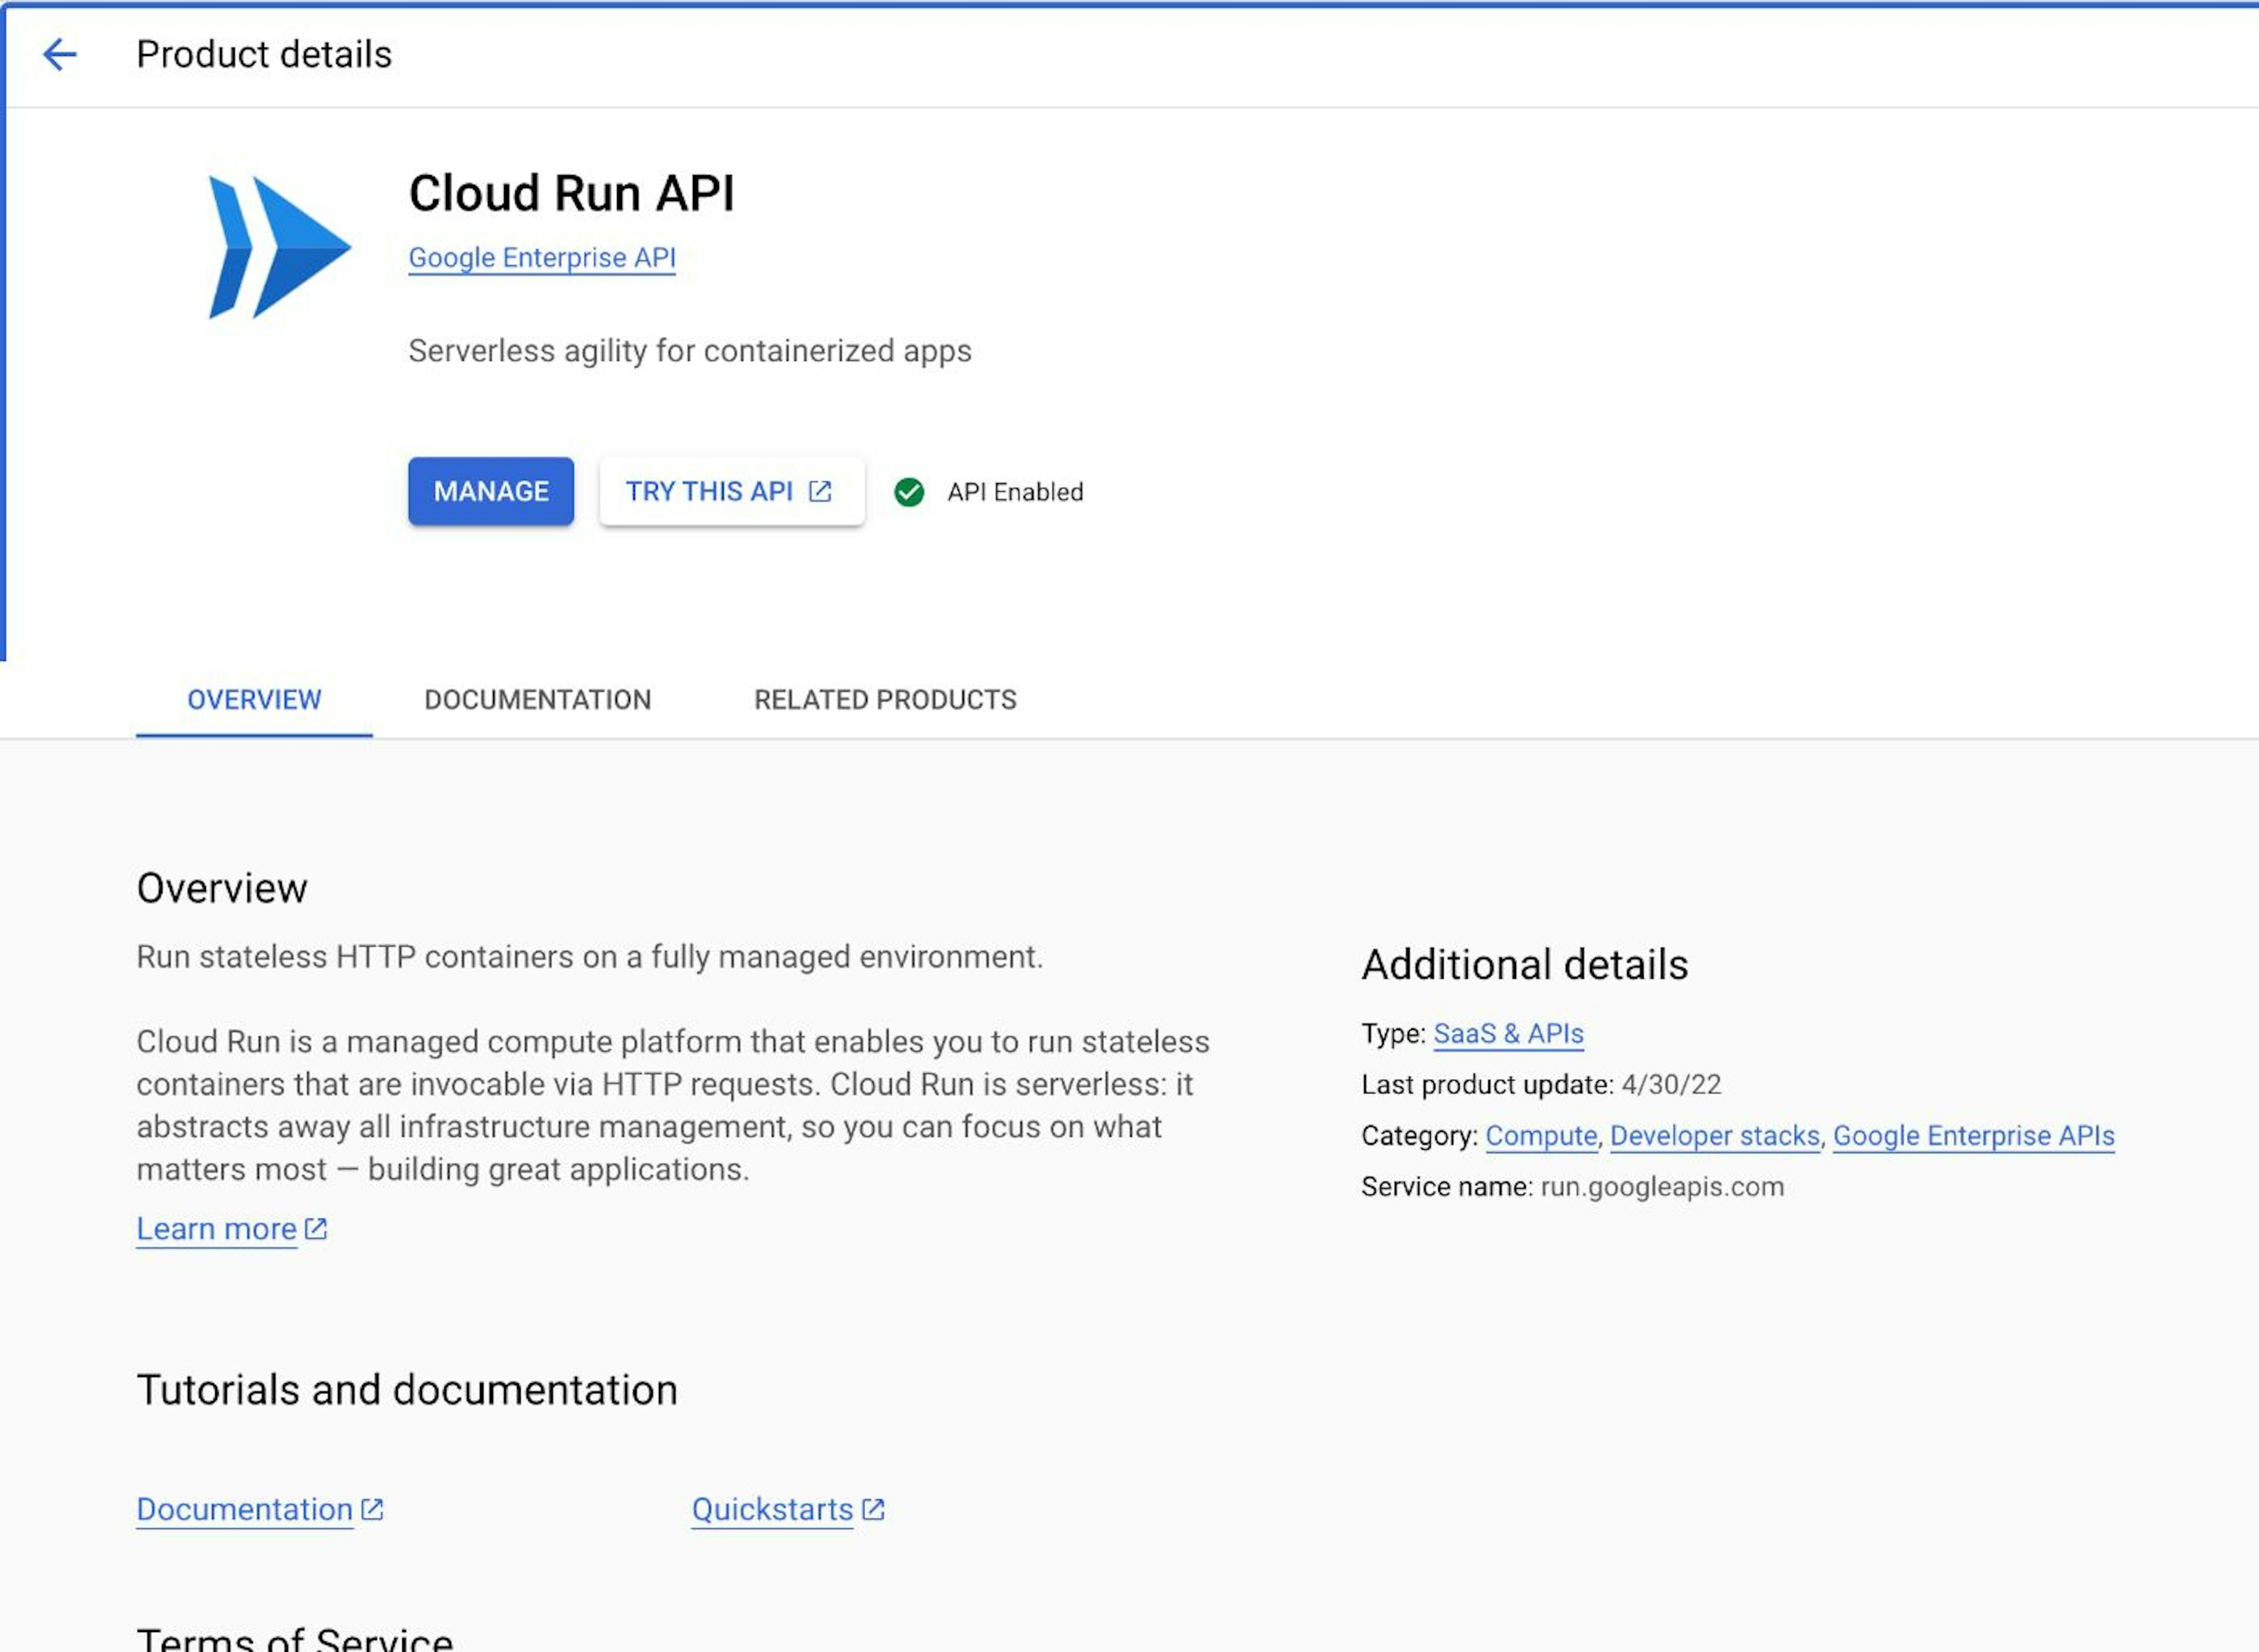 Cloud Run API